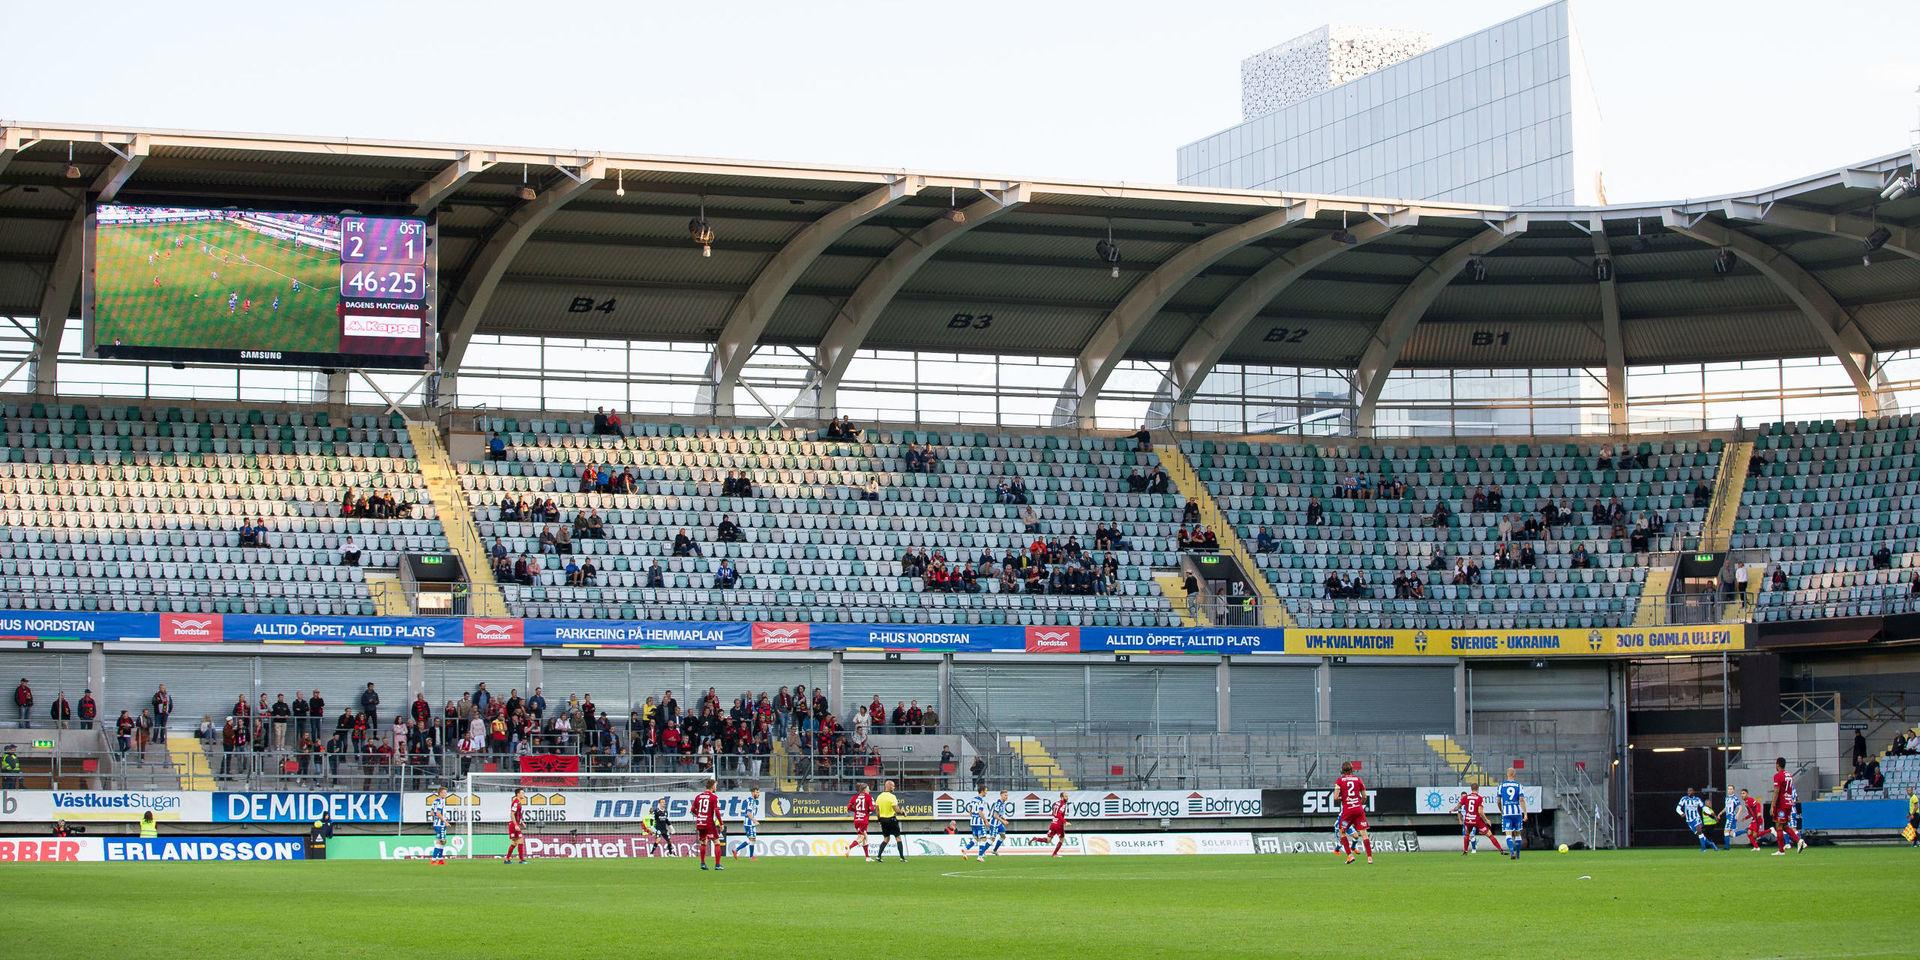 Läktare på Gamla Ullevi under fotbollsmatchen i allsvenskan mellan IFK Göteborg och Östersund